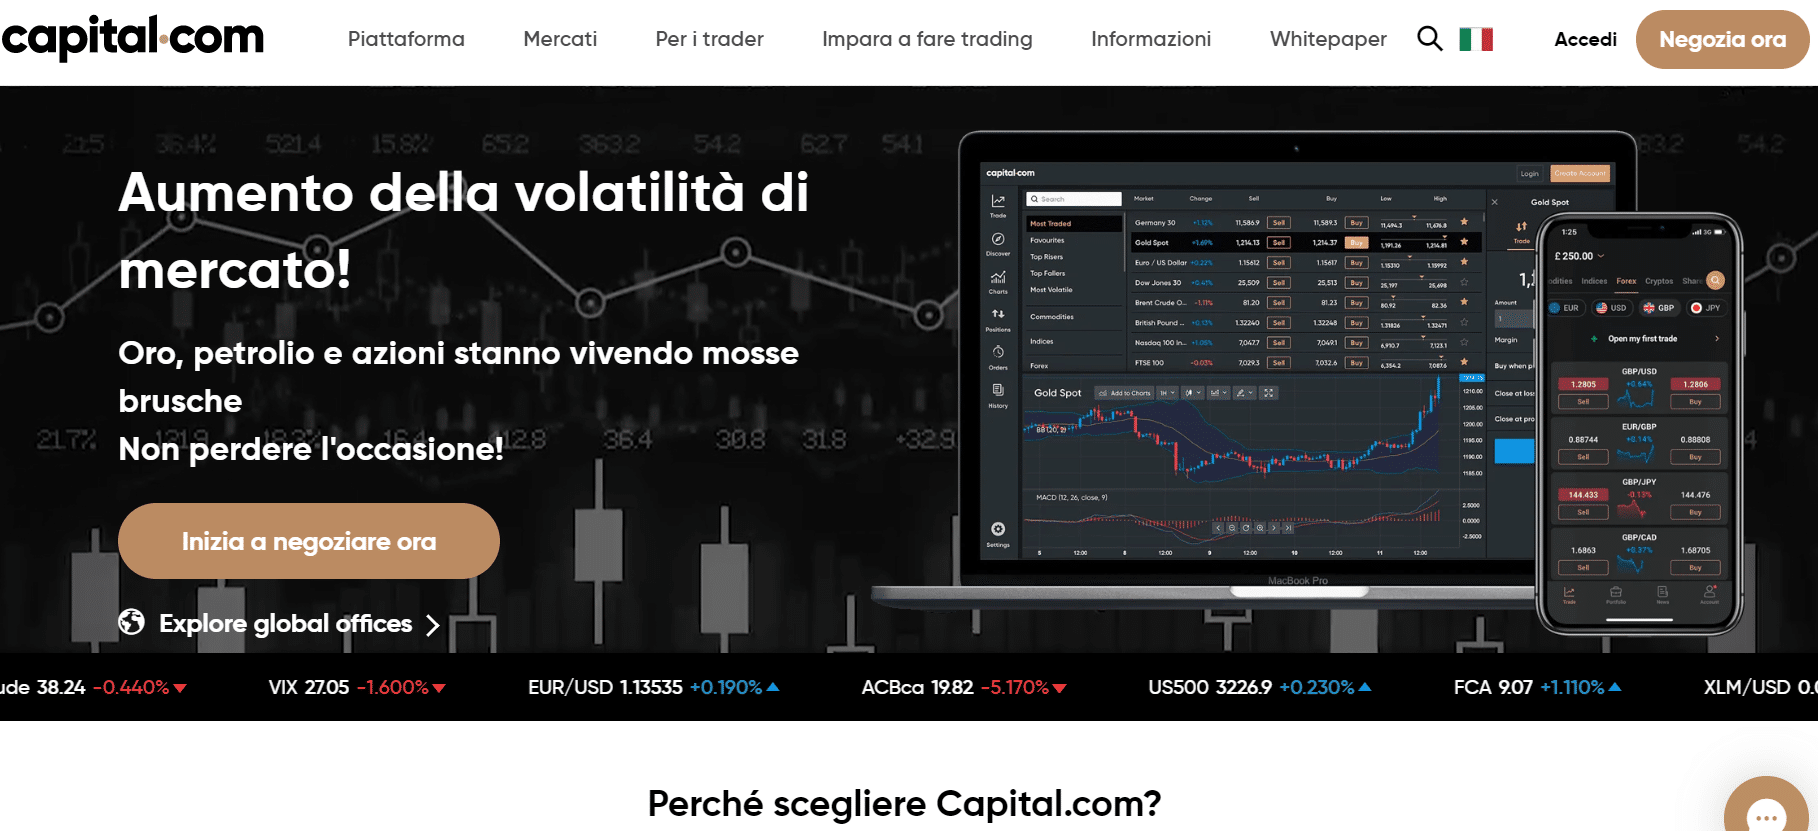 Capital.com per investire nel forex